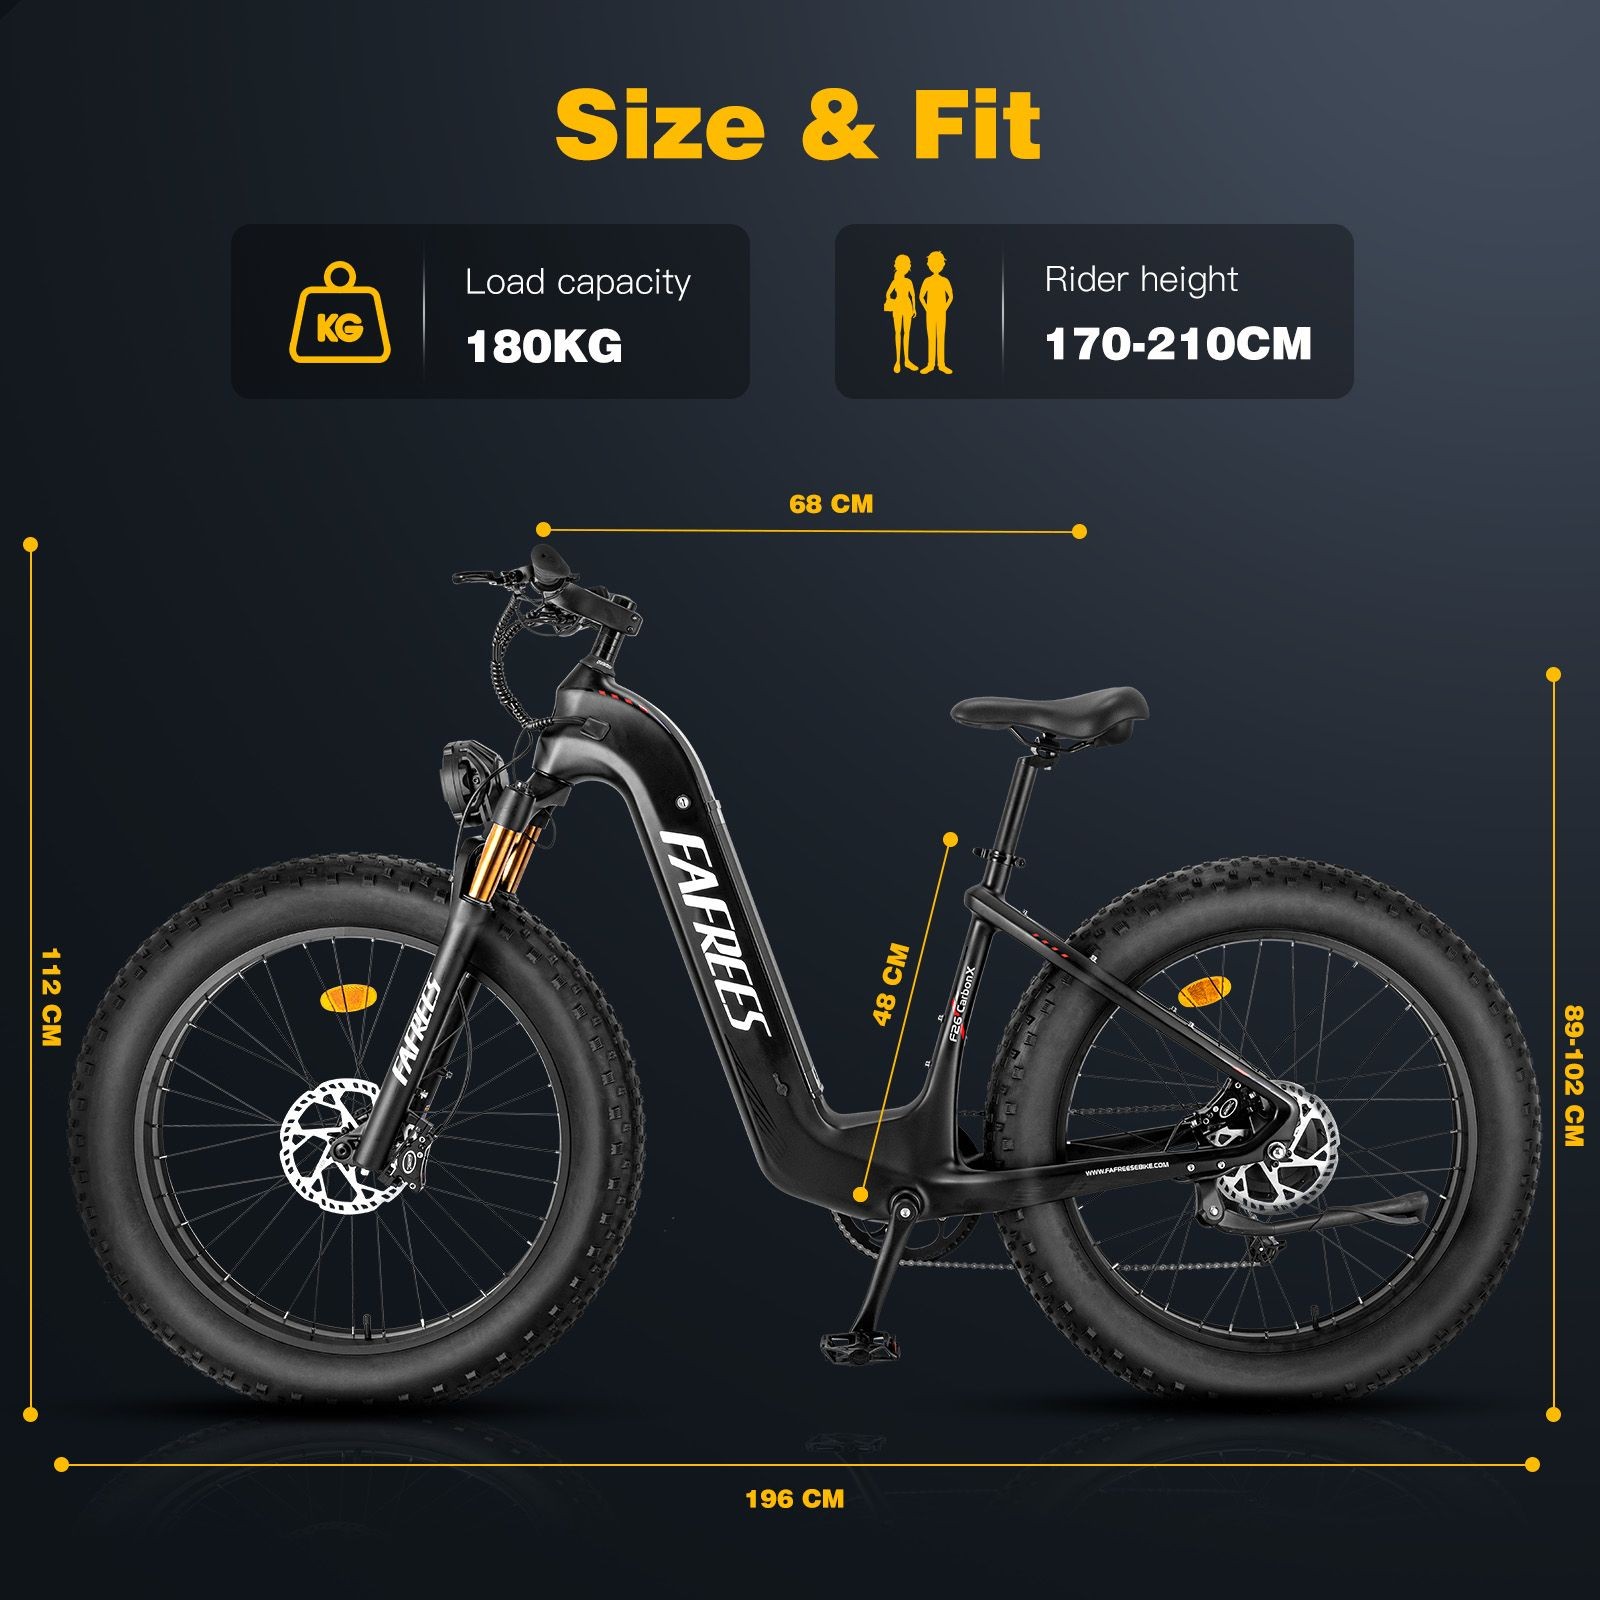 26*4,8 hüvelykes elektromos kerékpár FAFREES F26 Carbon